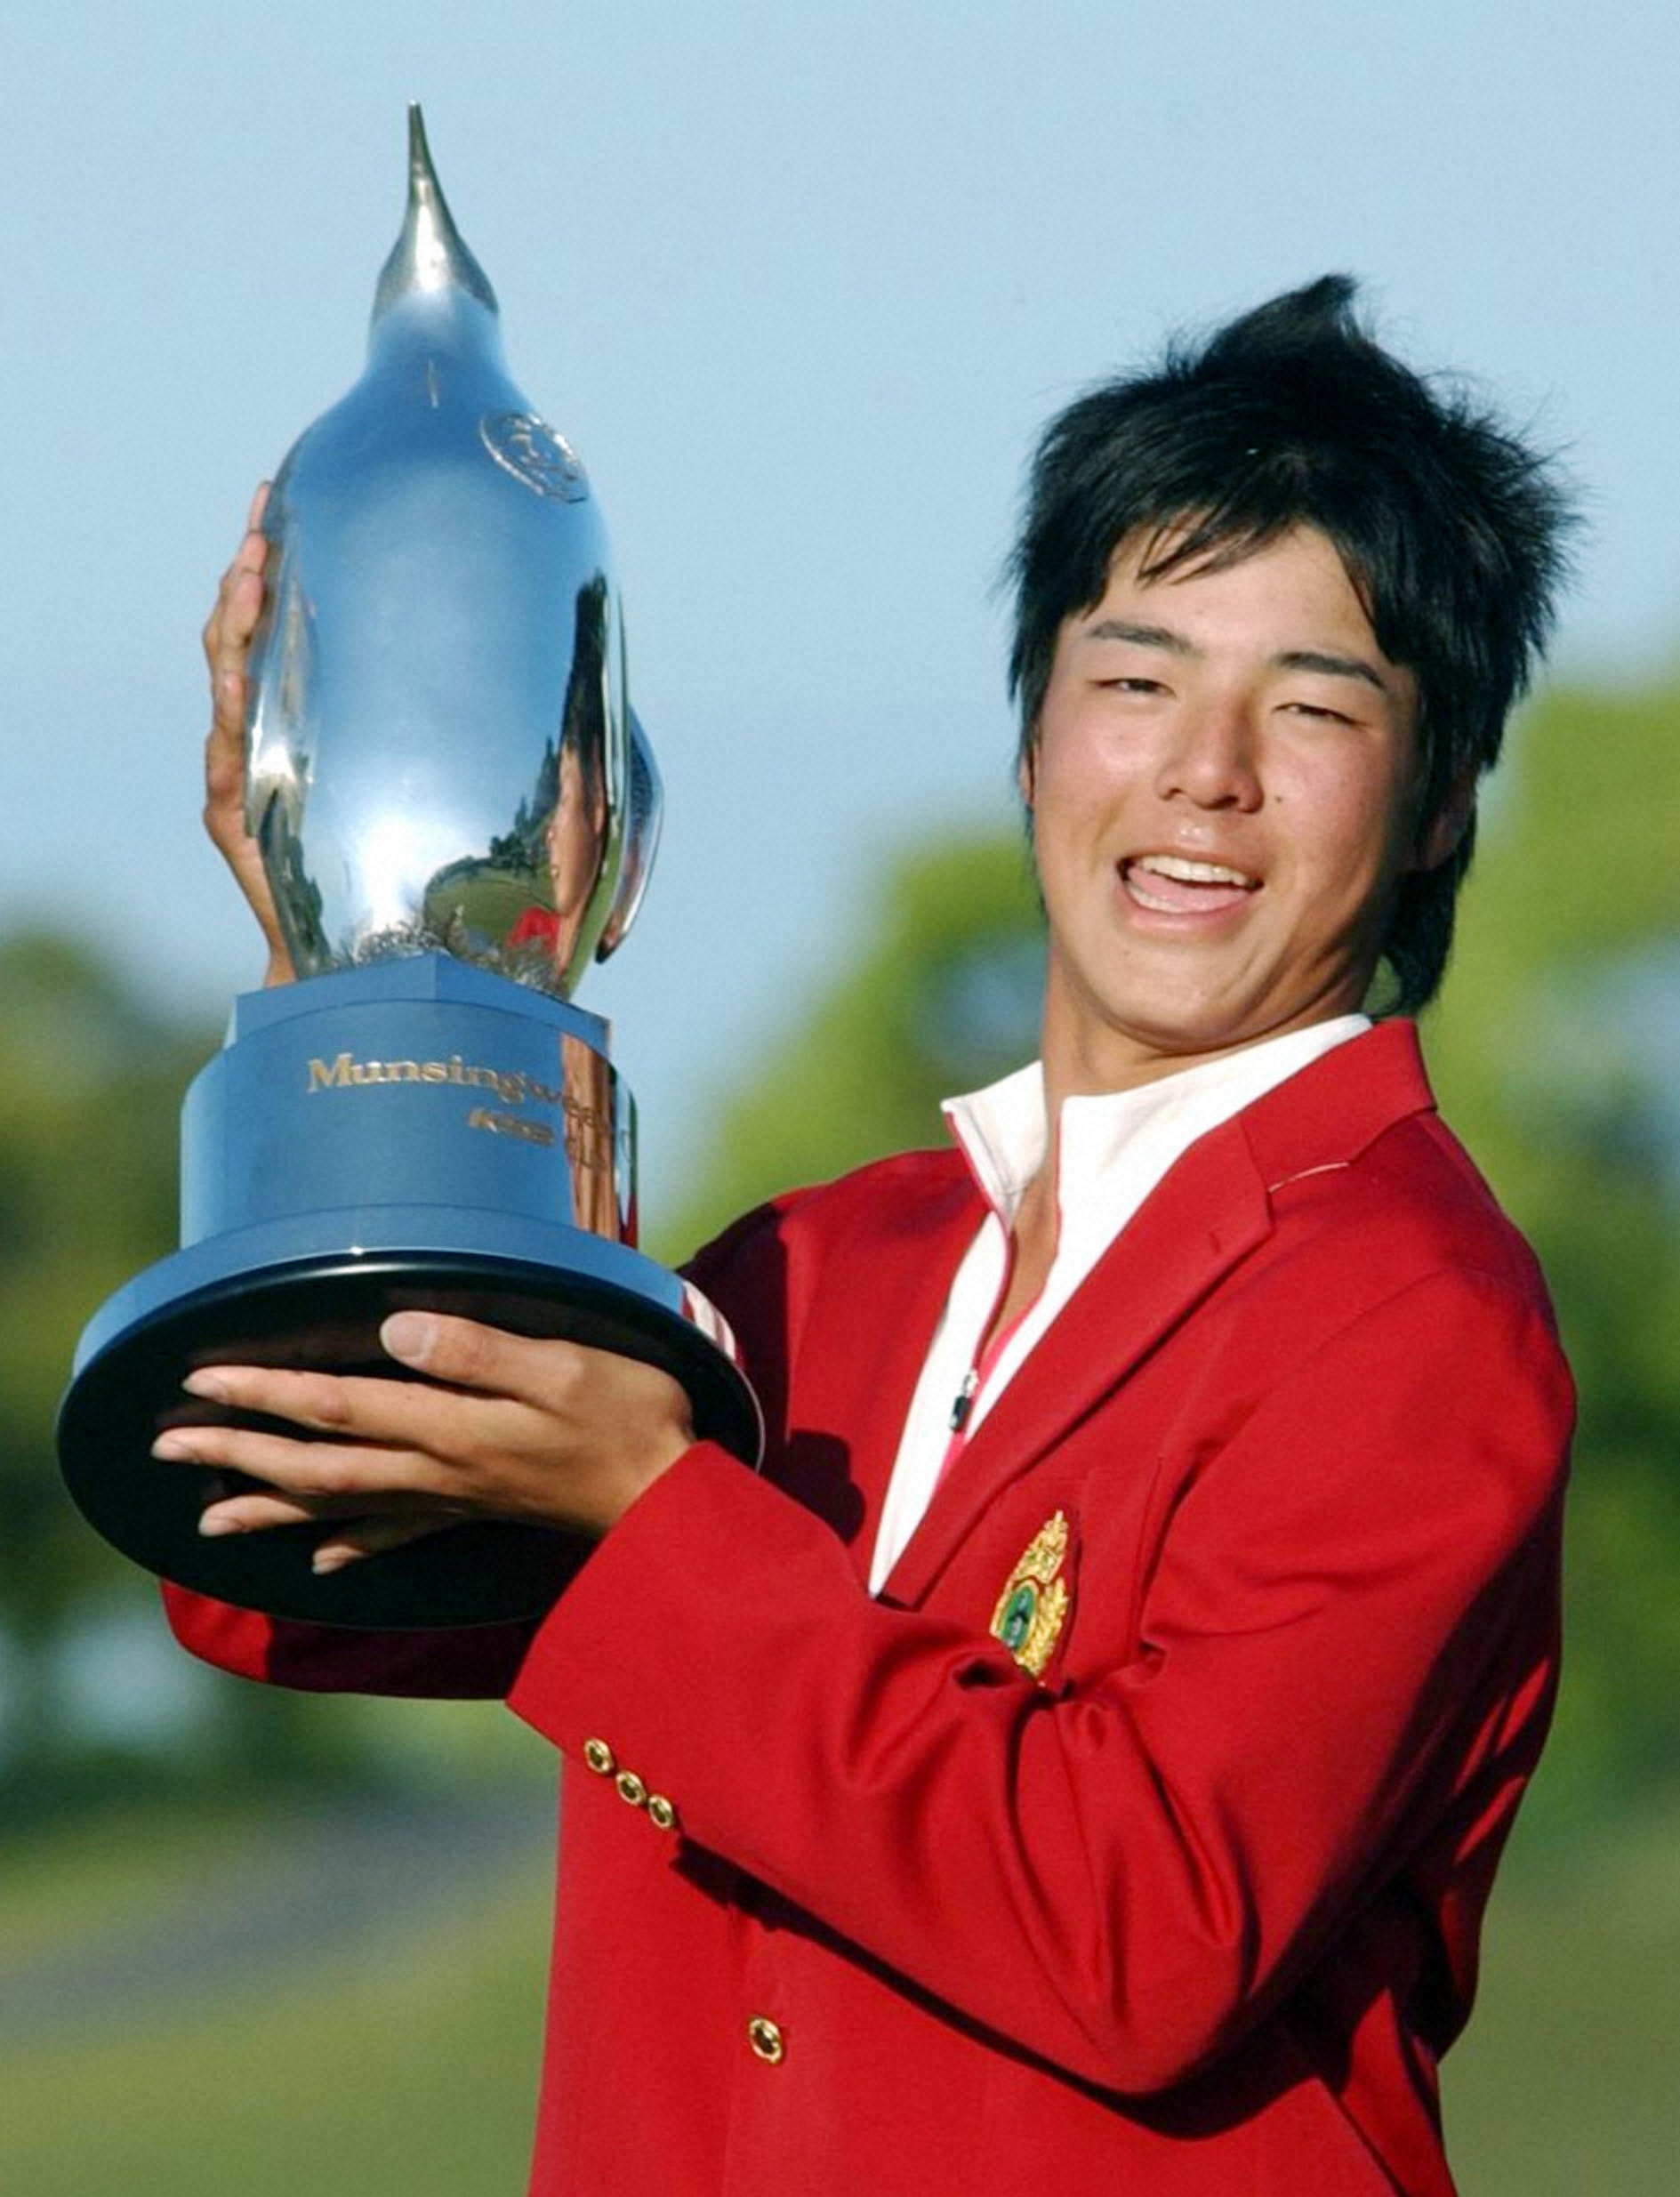 2007年、史上最年少で優勝しトロフィーを掲げる高校1年生の石川遼選手